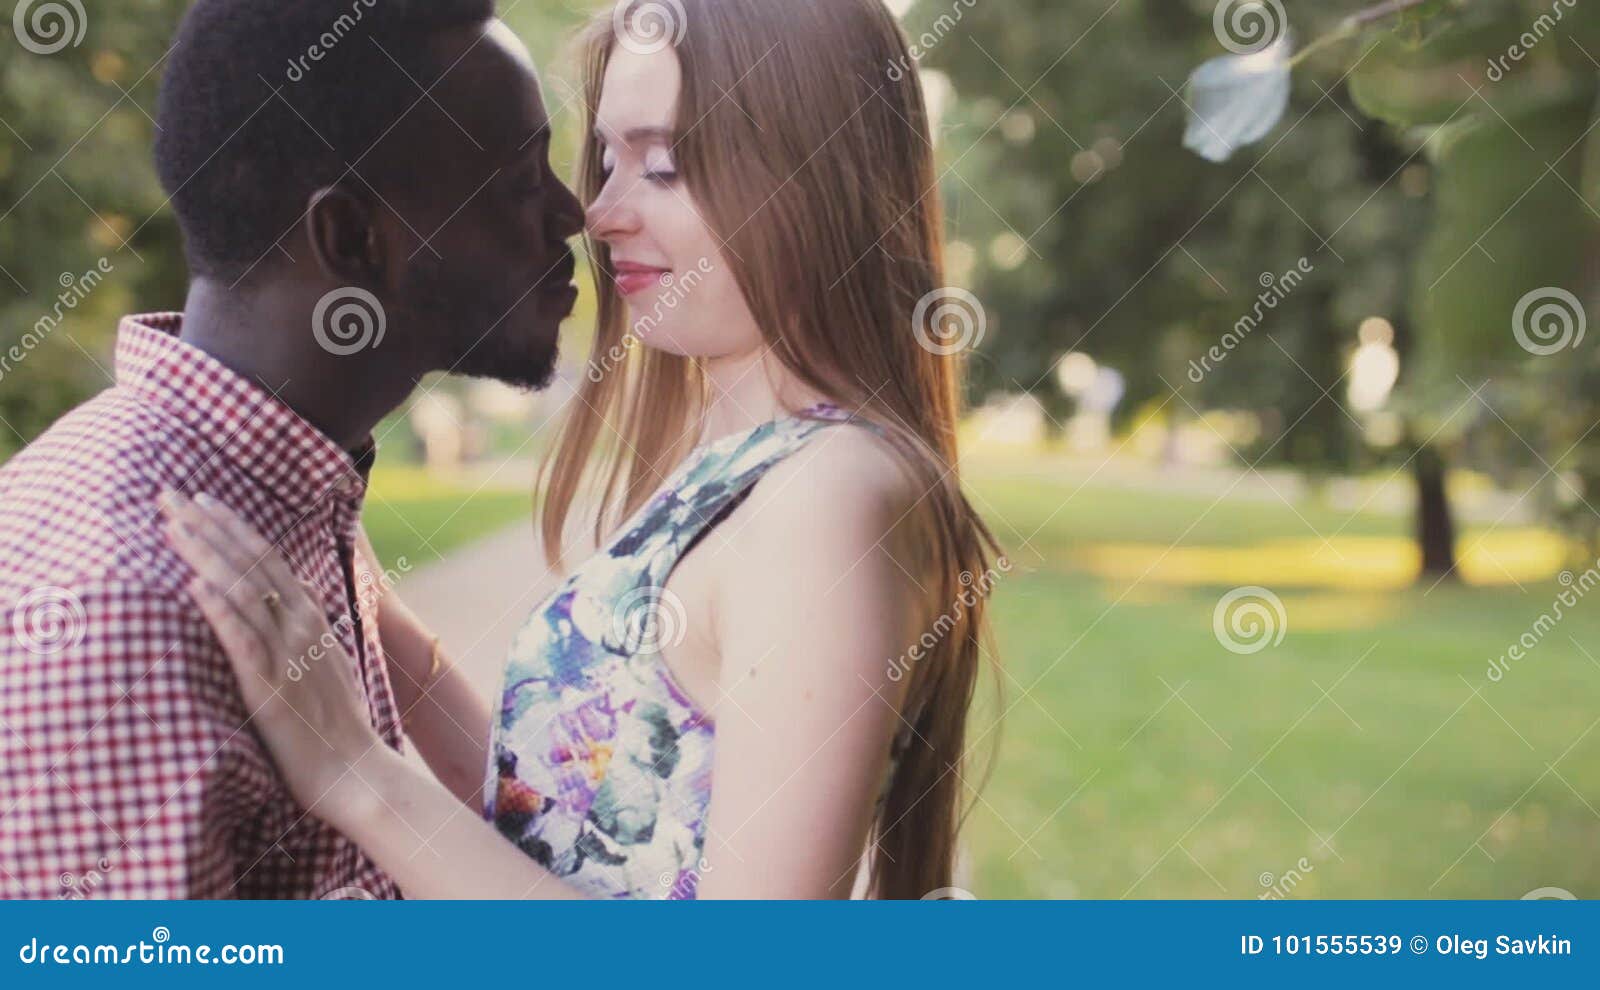 Date white men girls black 